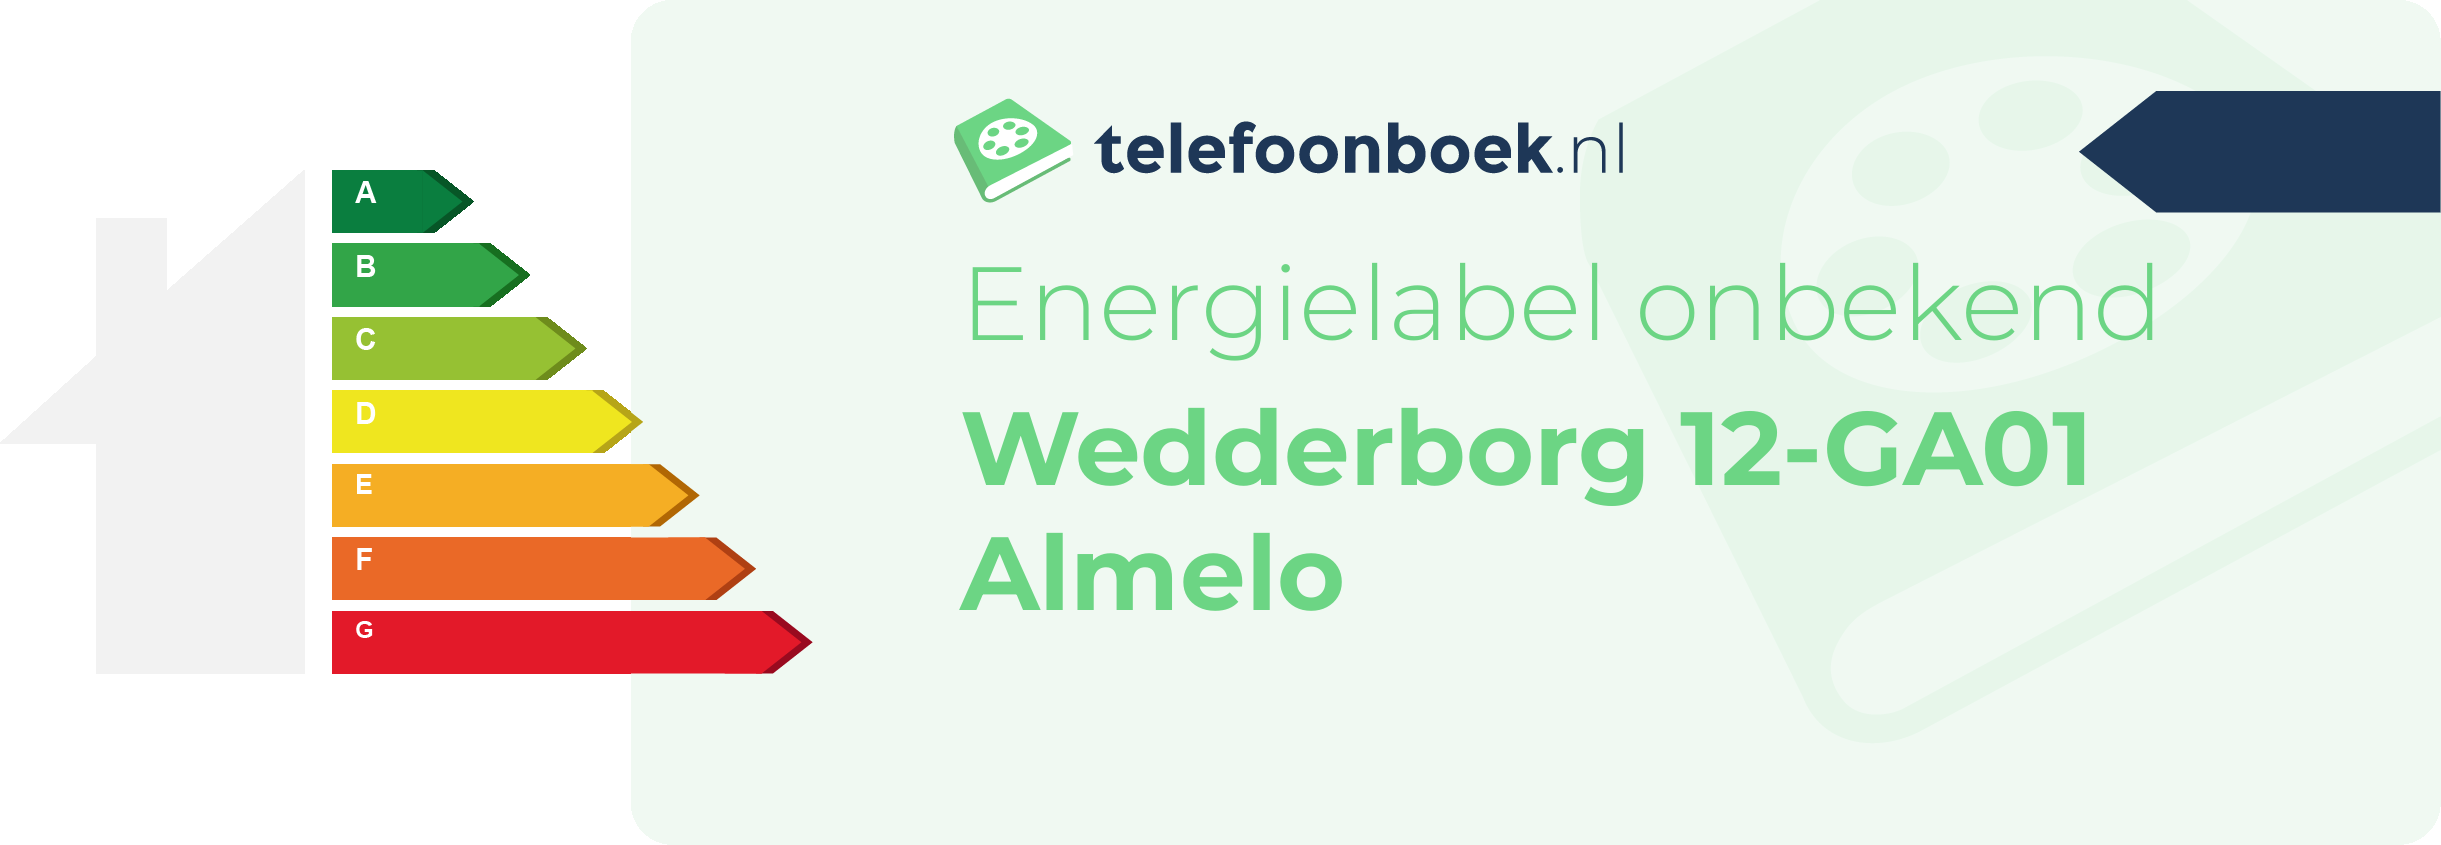 Energielabel Wedderborg 12-GA01 Almelo